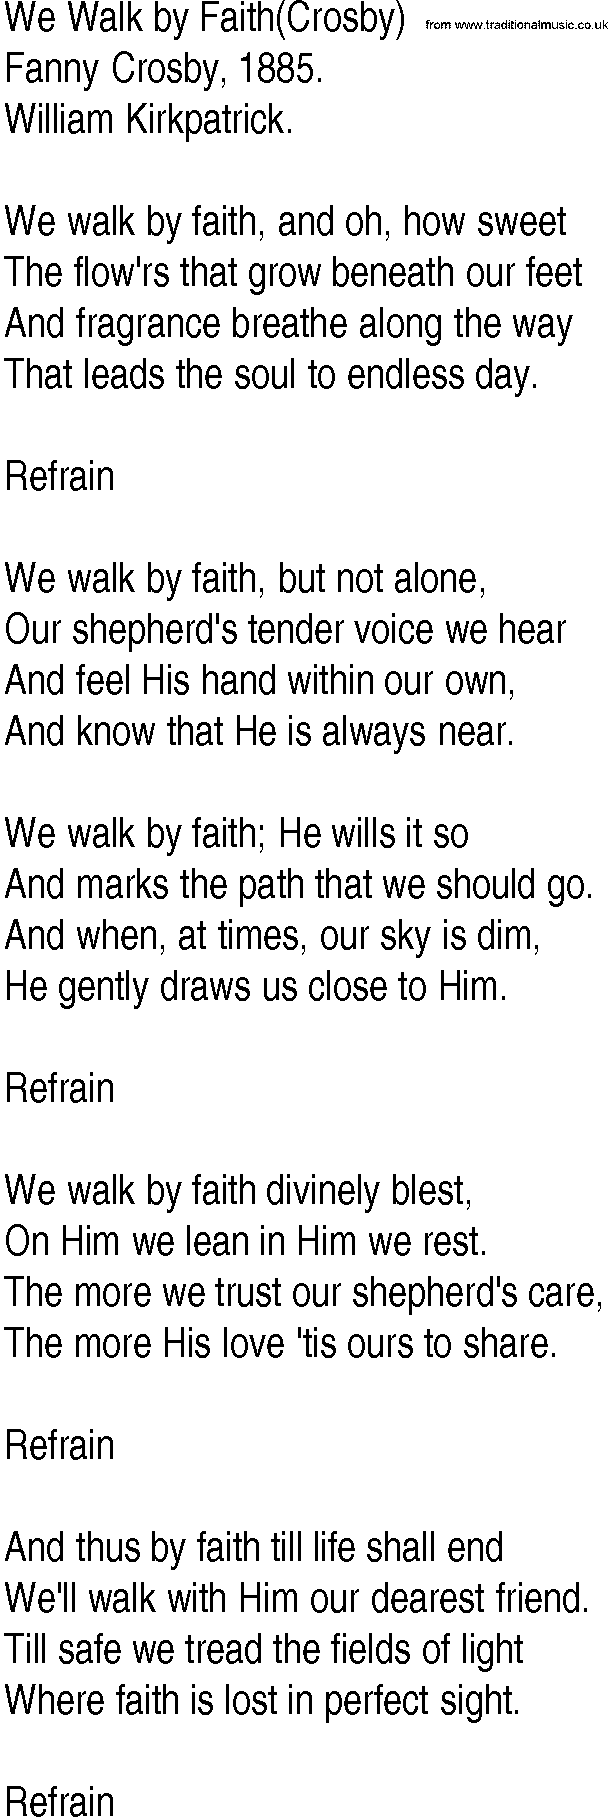 Hymn and Gospel Song: We Walk by Faith(Crosby) by Fanny Crosby lyrics